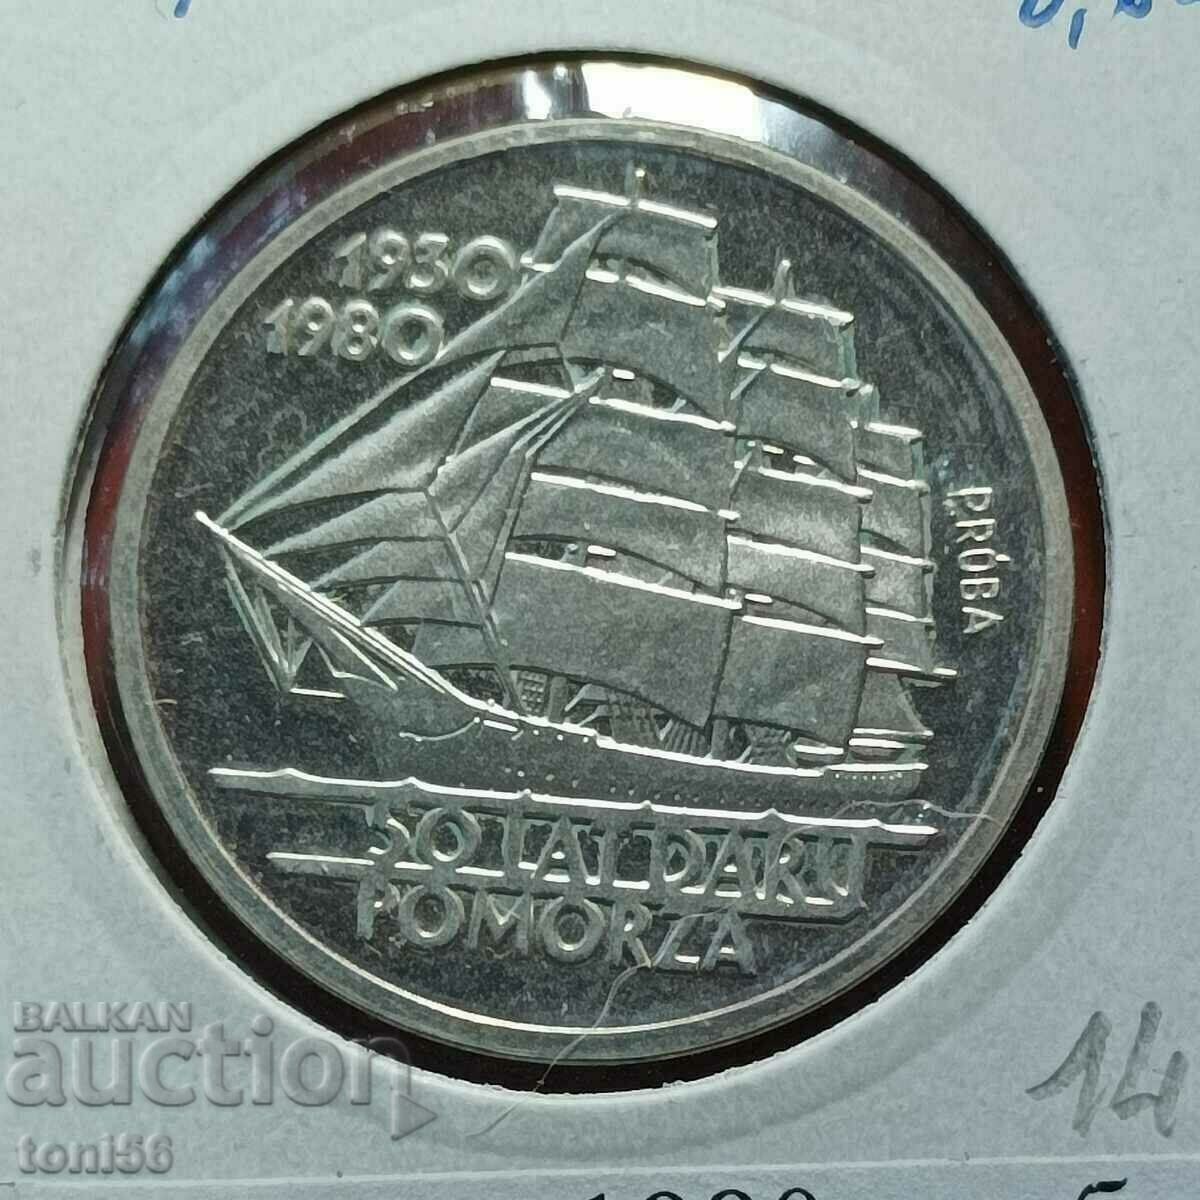 Polonia 100 zloți 1980 /PROBA - argint,